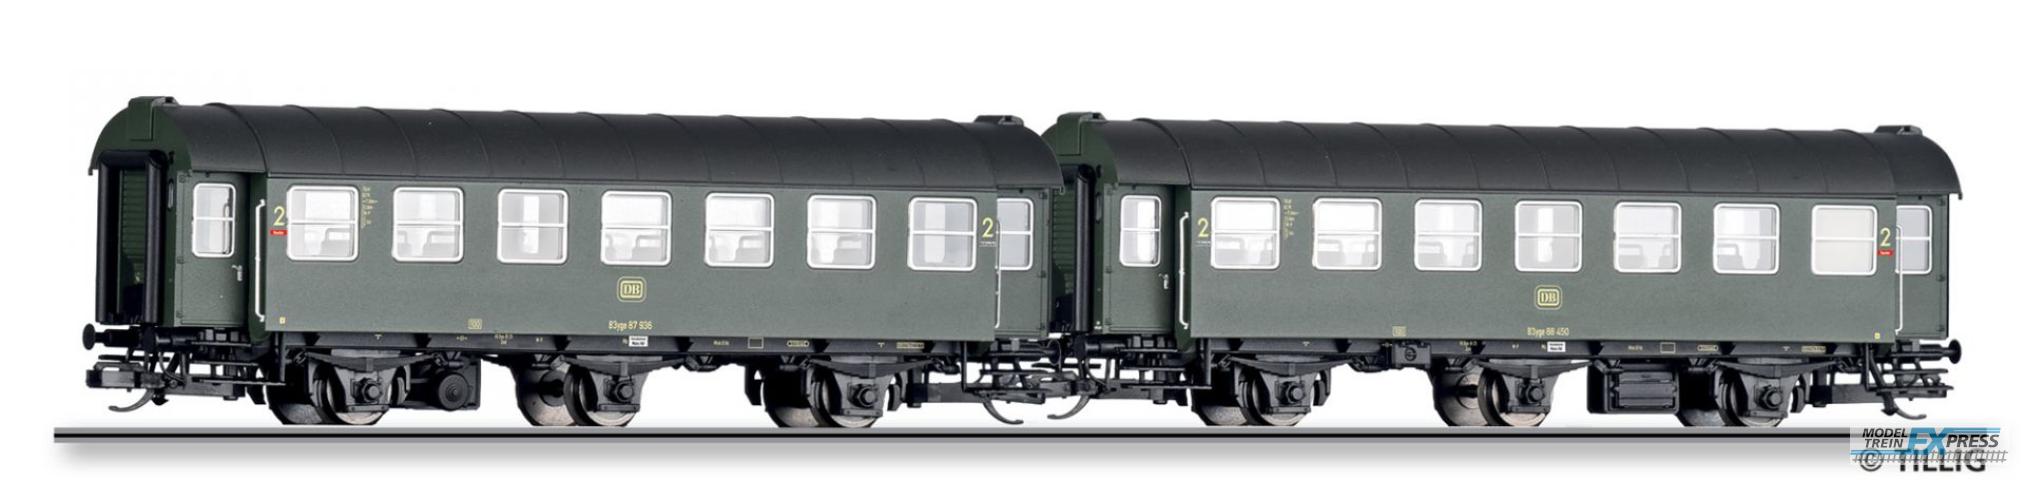 Tillig 1061 Reisezugwagen-Paar der DB, bestehend aus zwei 2. Klasse Reisezugwagen, Ep. IV